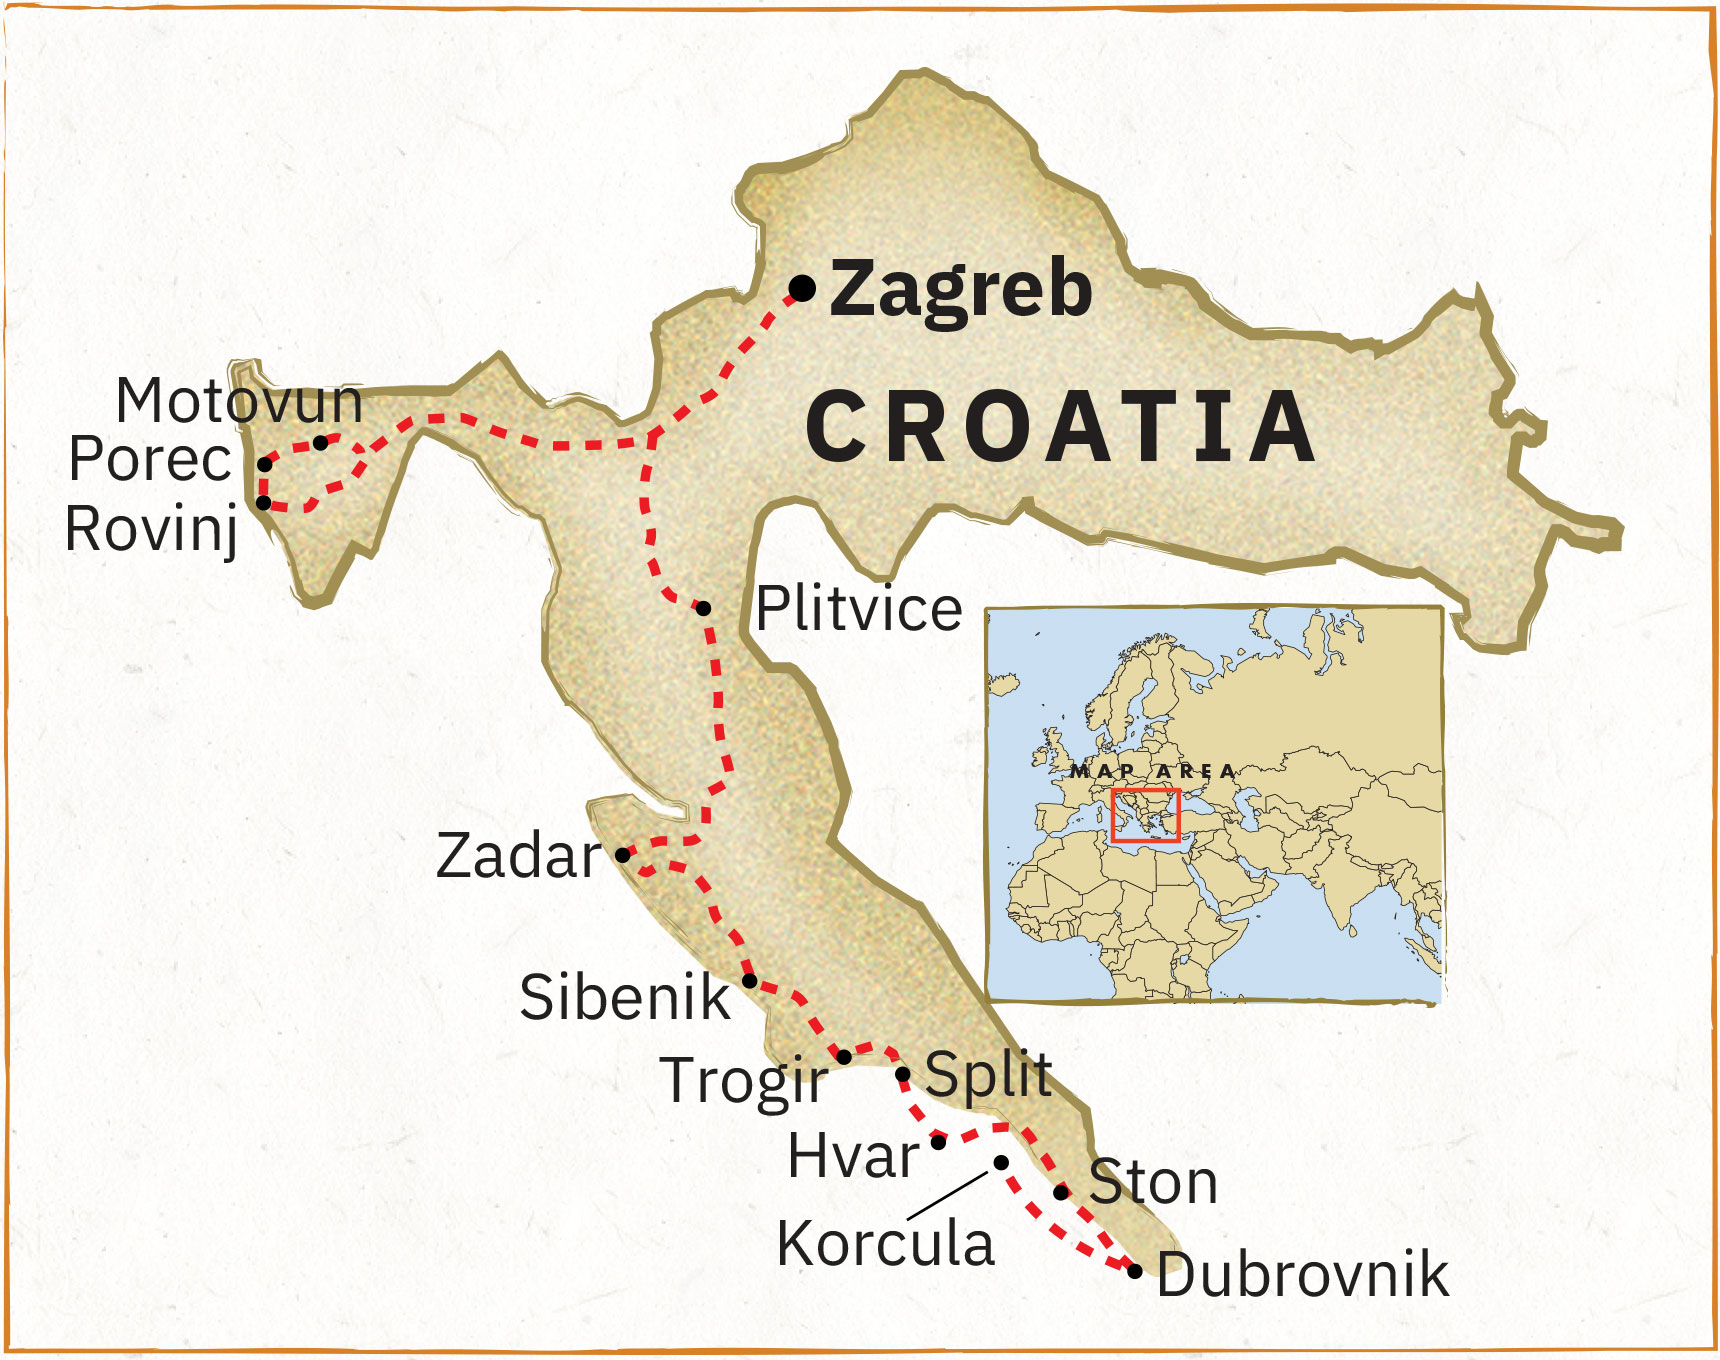 ECROA21 Croatia 